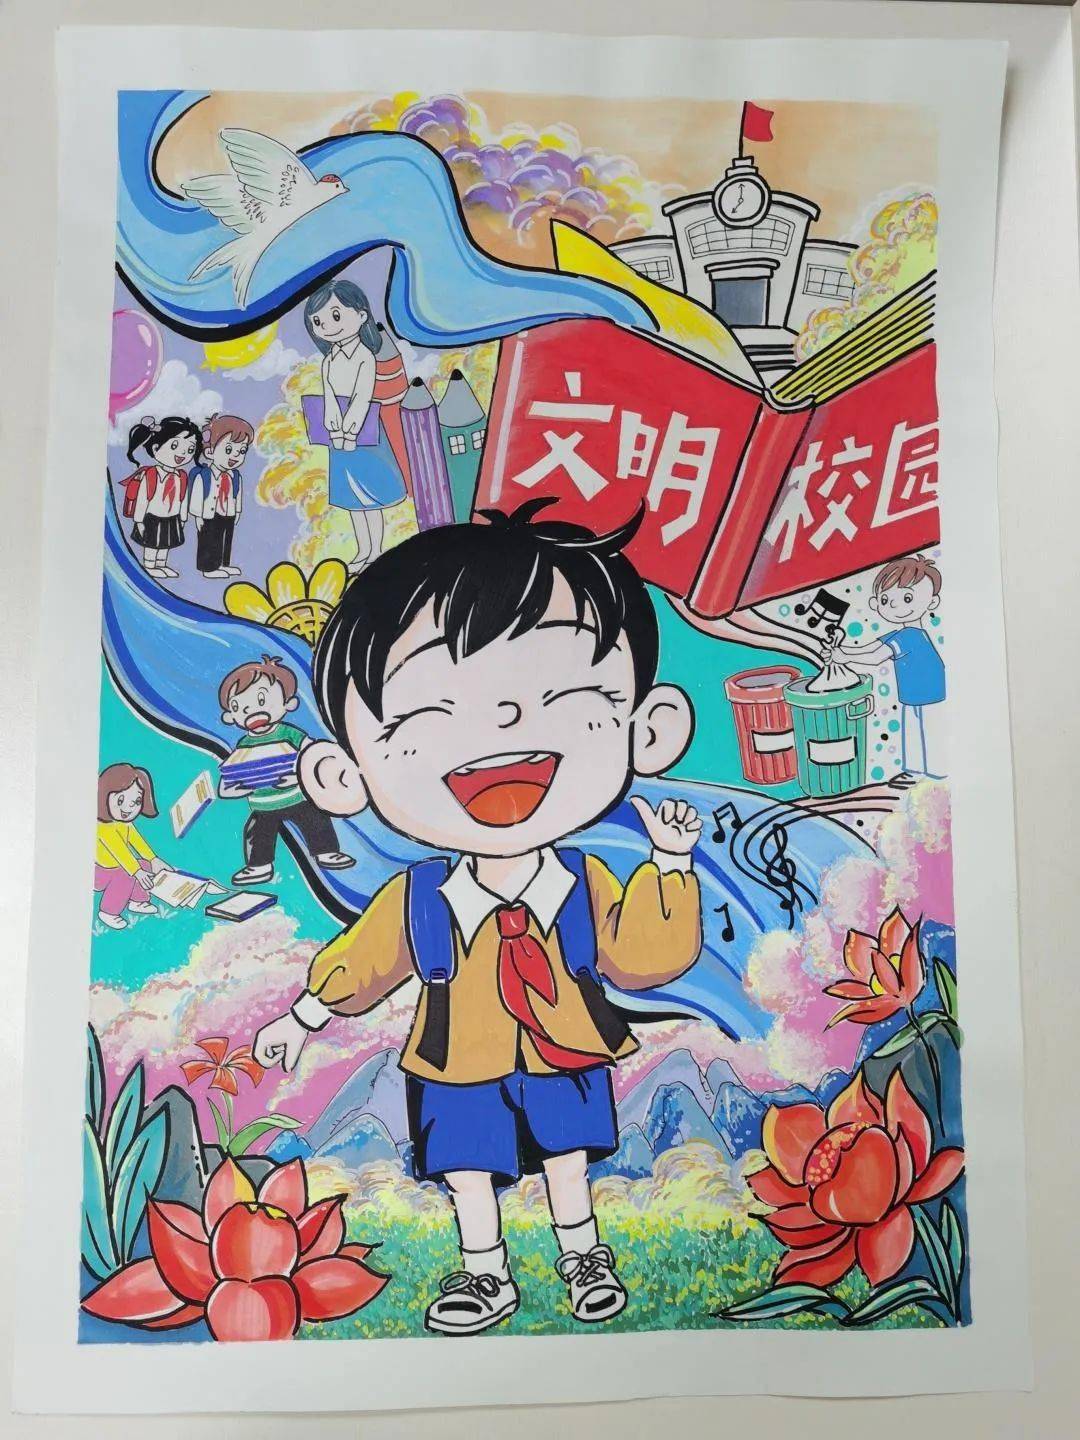 学校:柳州市柳邕路第一小学作者:赵伊樱洛作品名称:《我眼中的文明